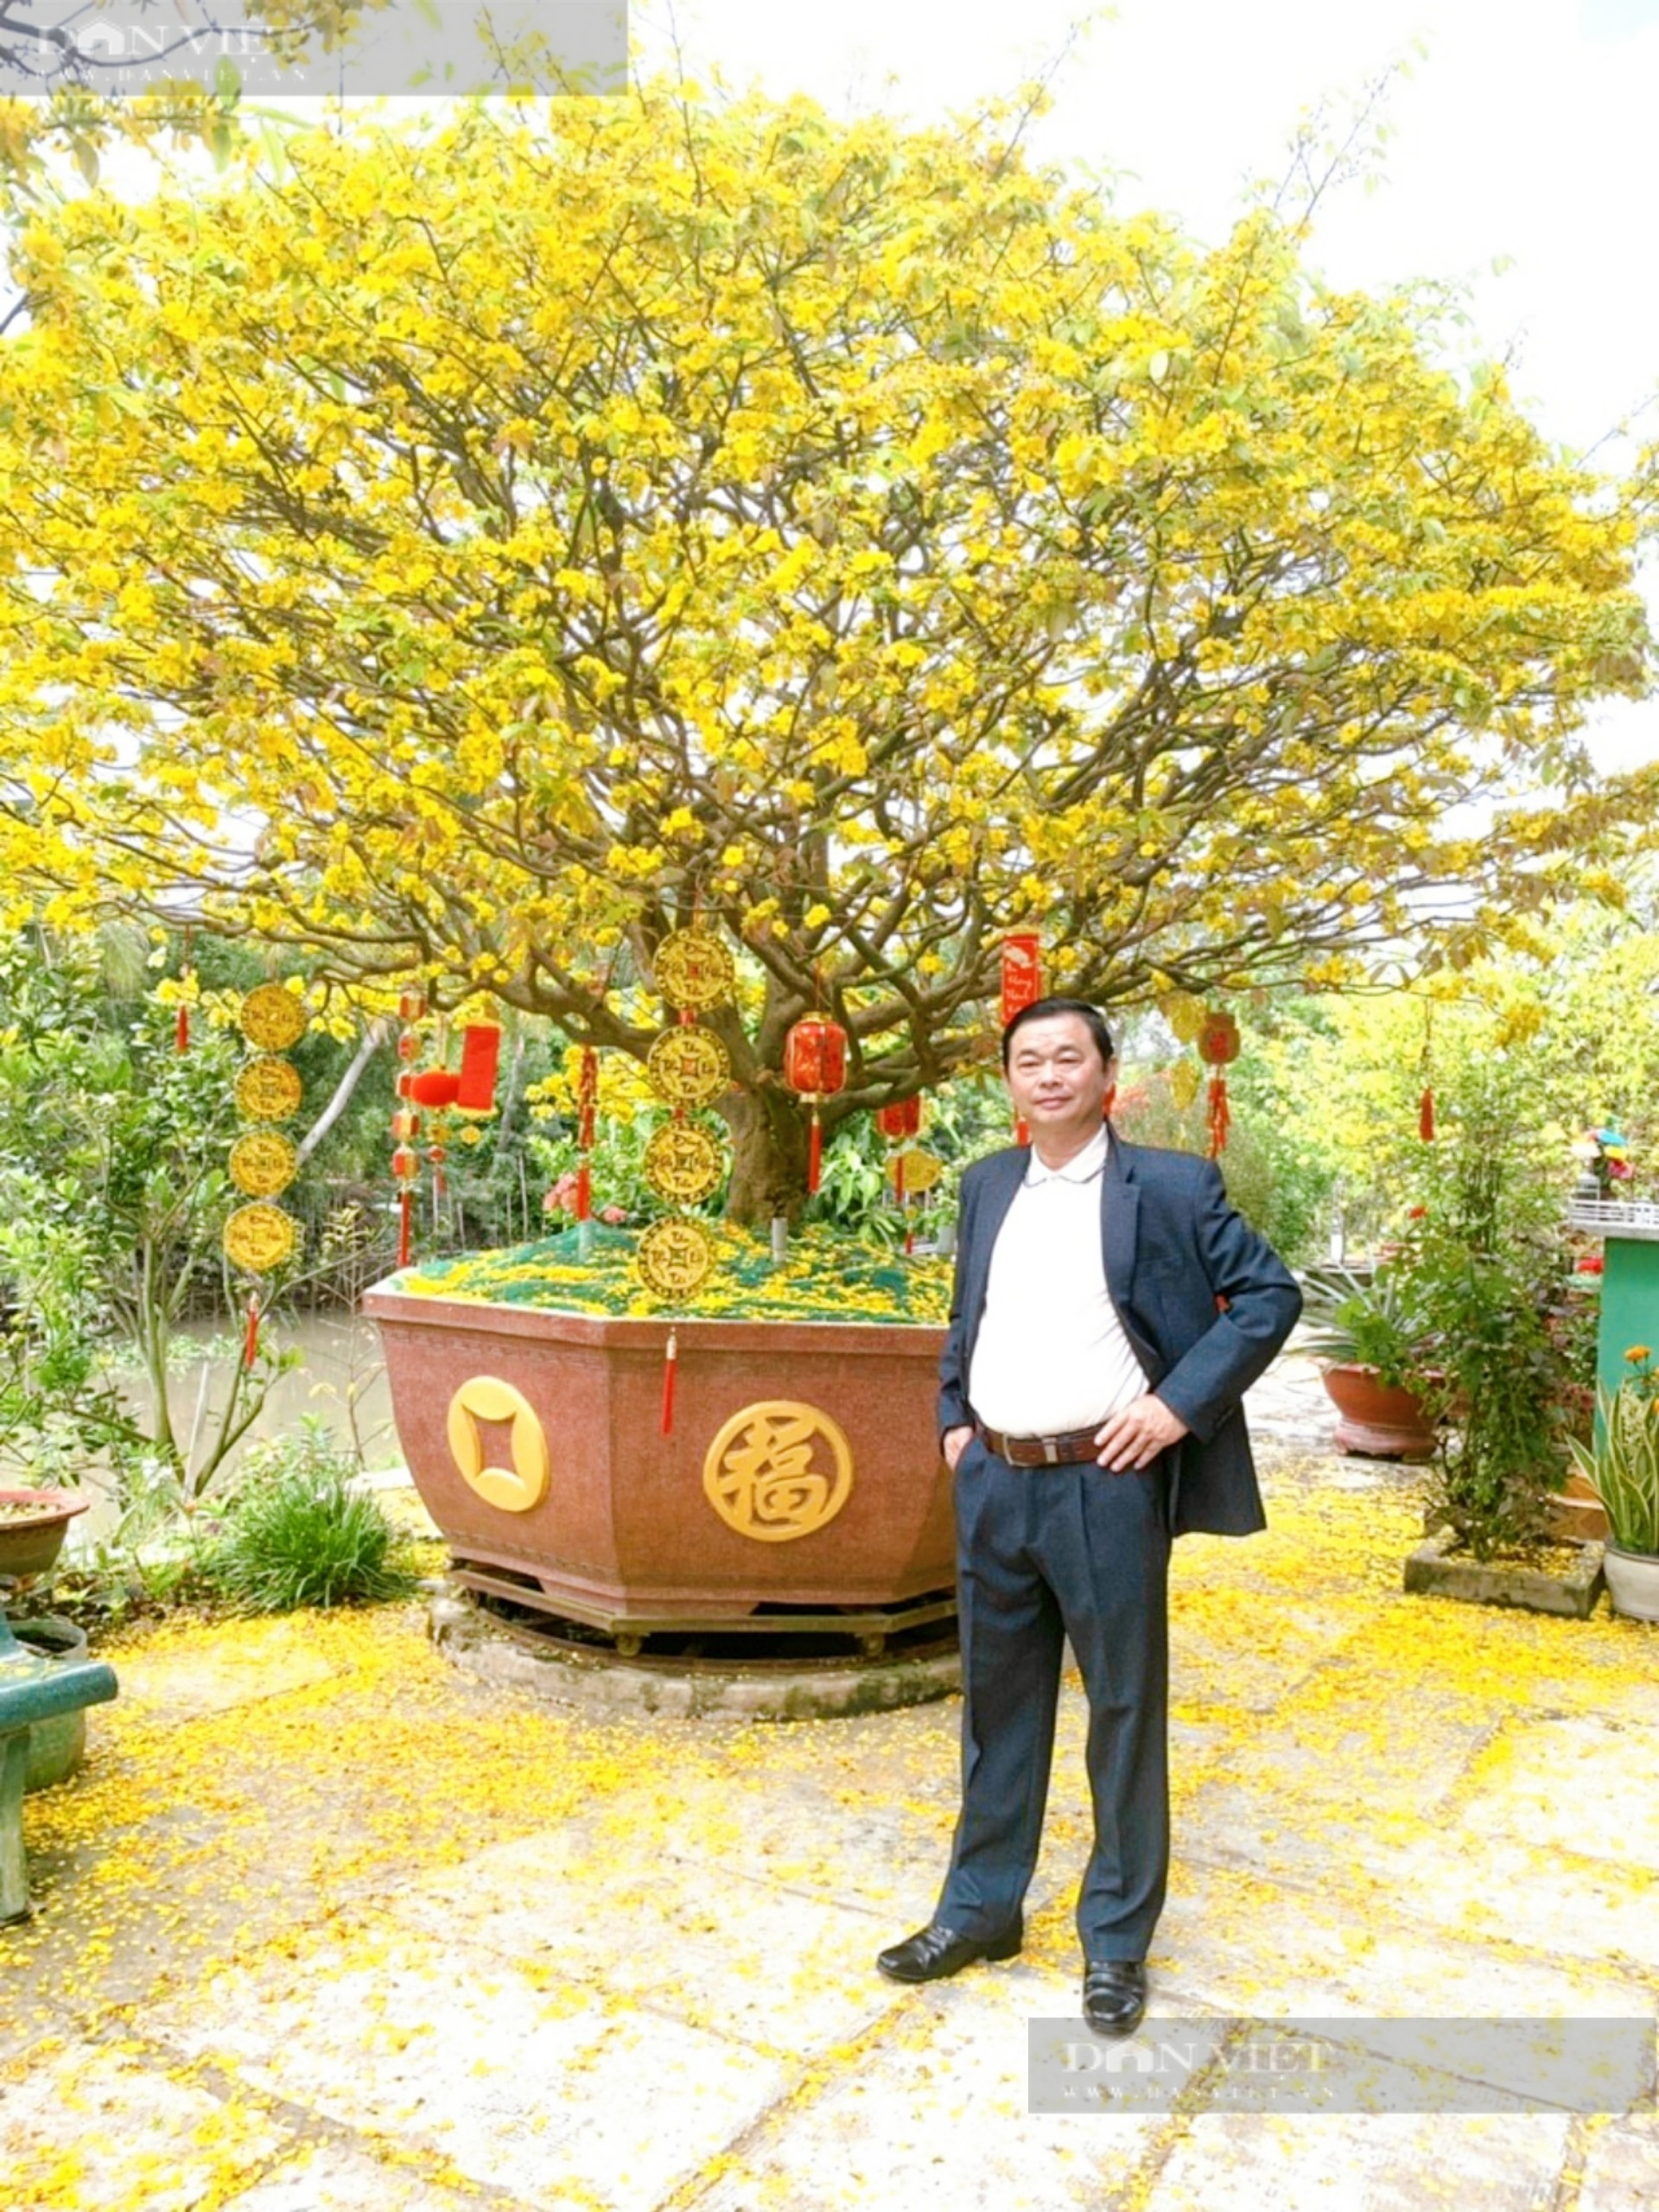 Một nông dân ở An Giang sở hữu 3 cây mai vàng giảo gần 100 tuổi, được thương lái ngã giá tiền tỷ - Ảnh 7.